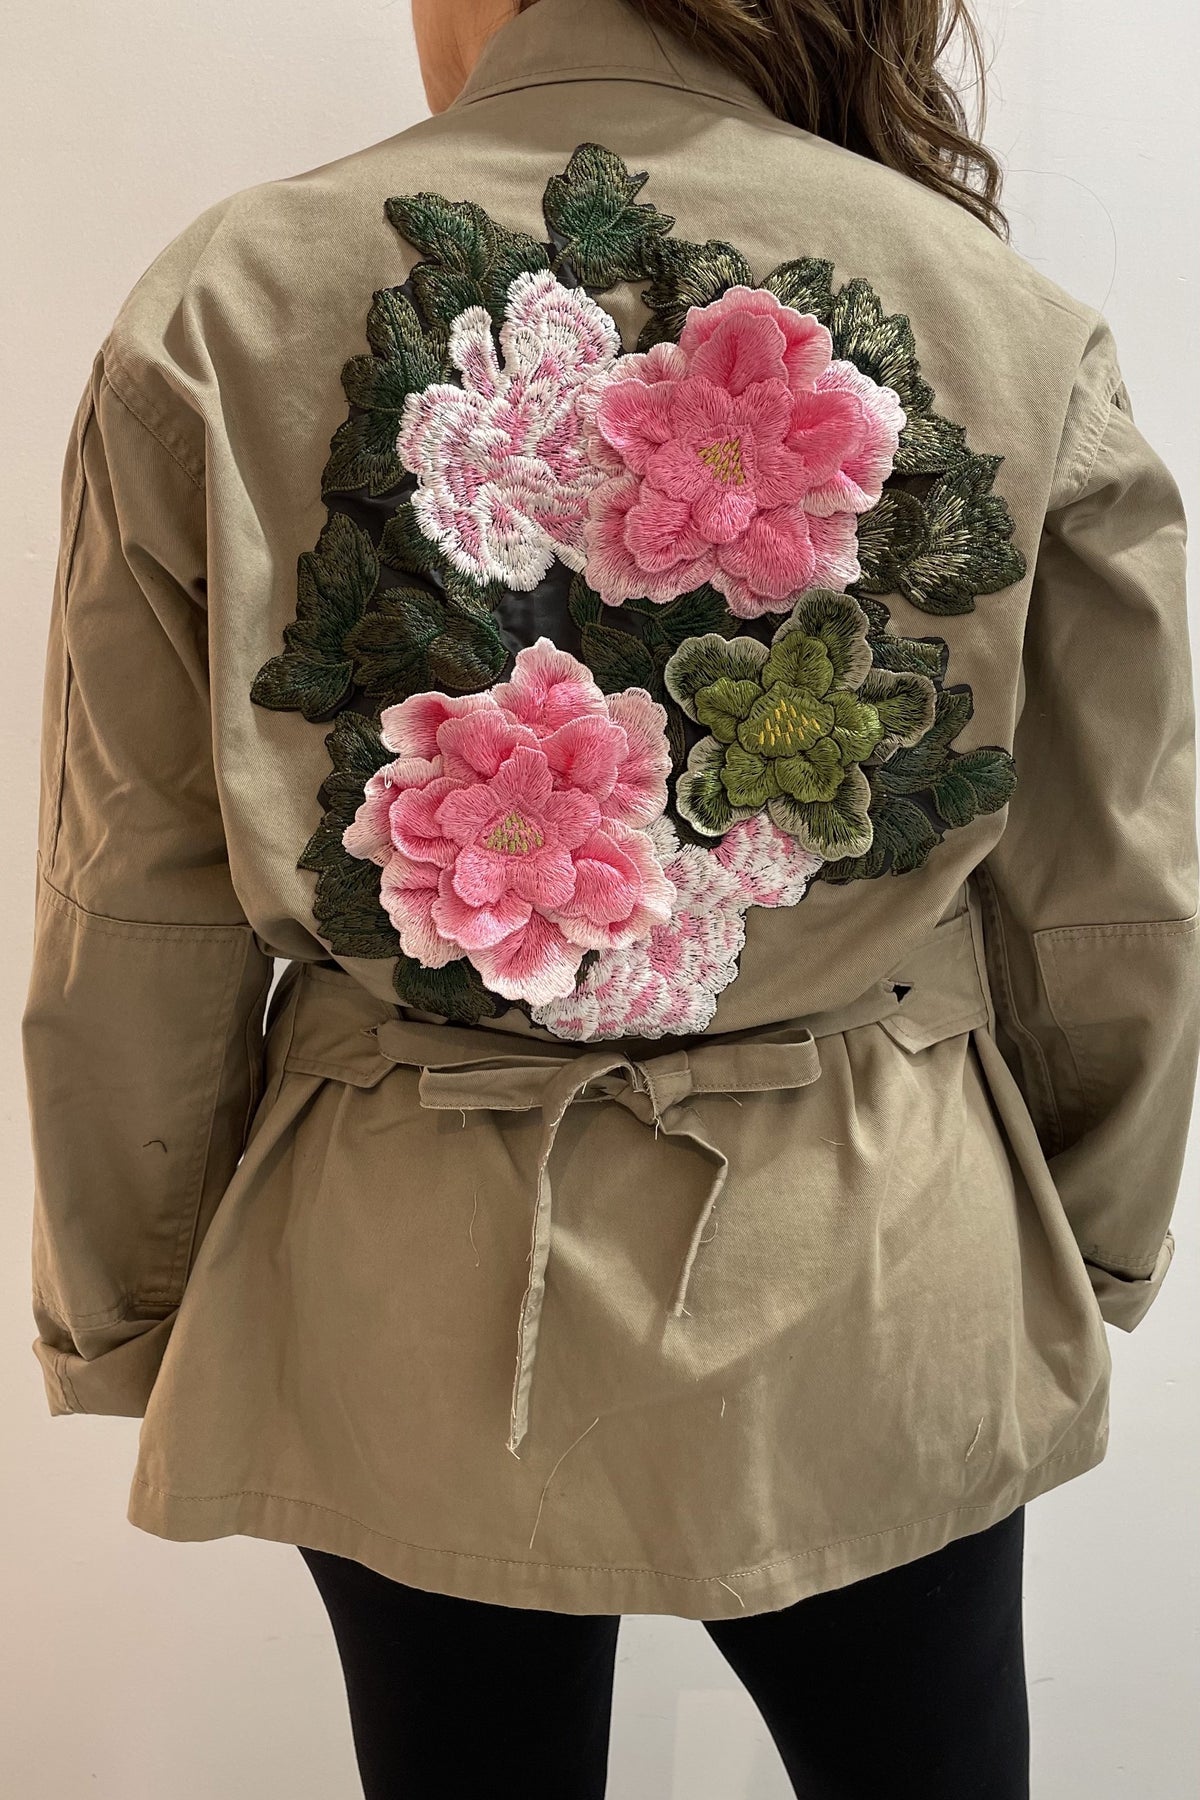 Josie Bruno Vintage Jacket With Peachy Pink Flowers